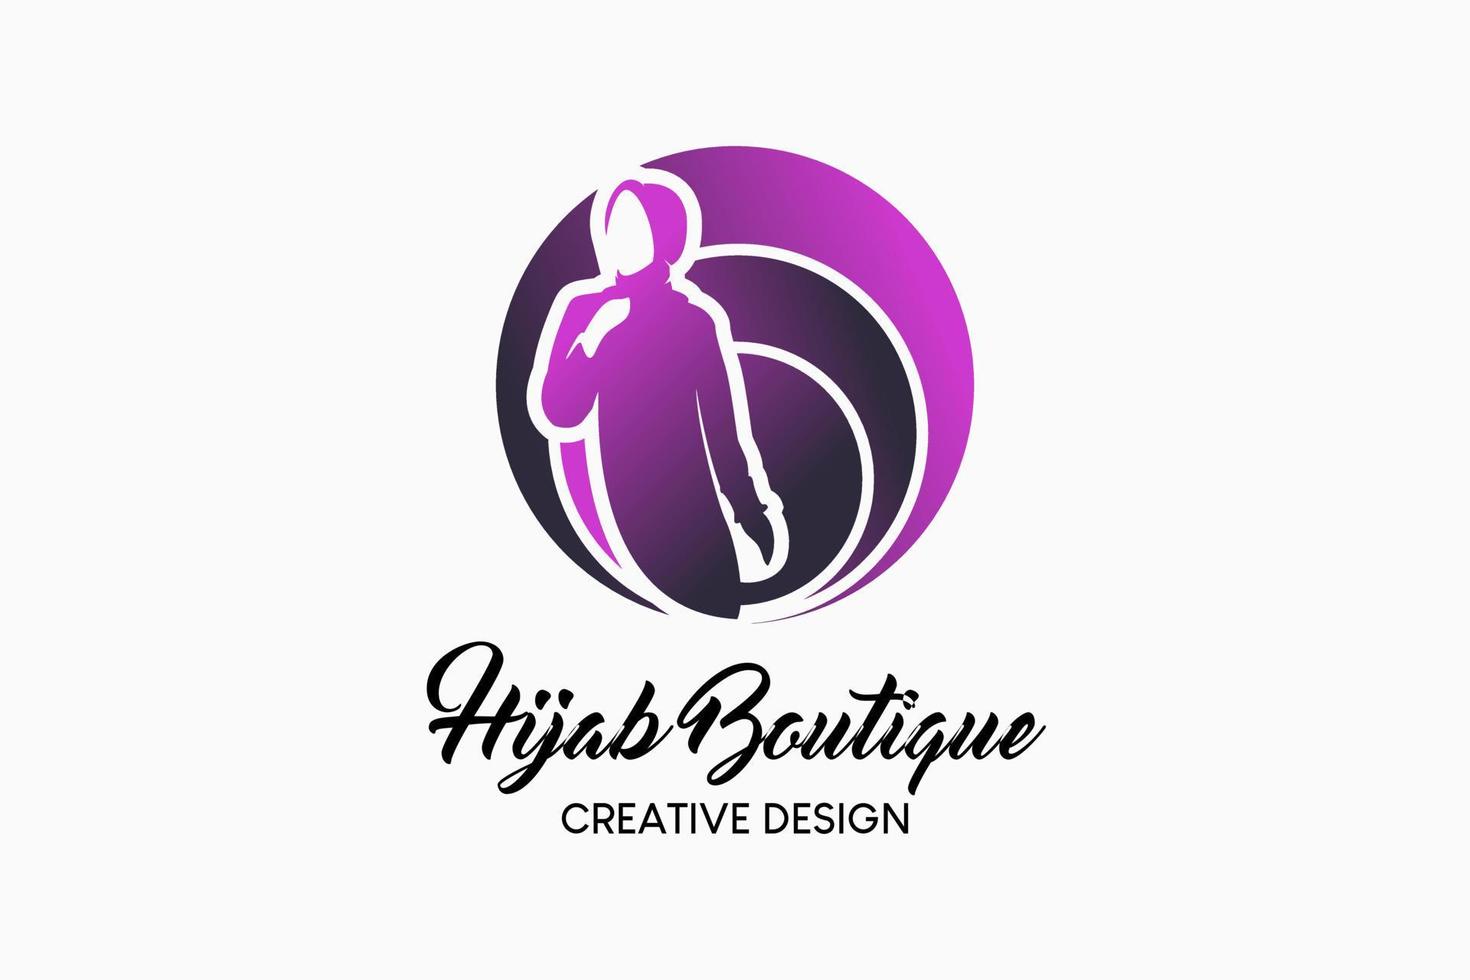 hijab winkel logo ontwerp met een creatief concept van silhouet van een vrouw in een cirkel. hijab mode logo vector illustratie.